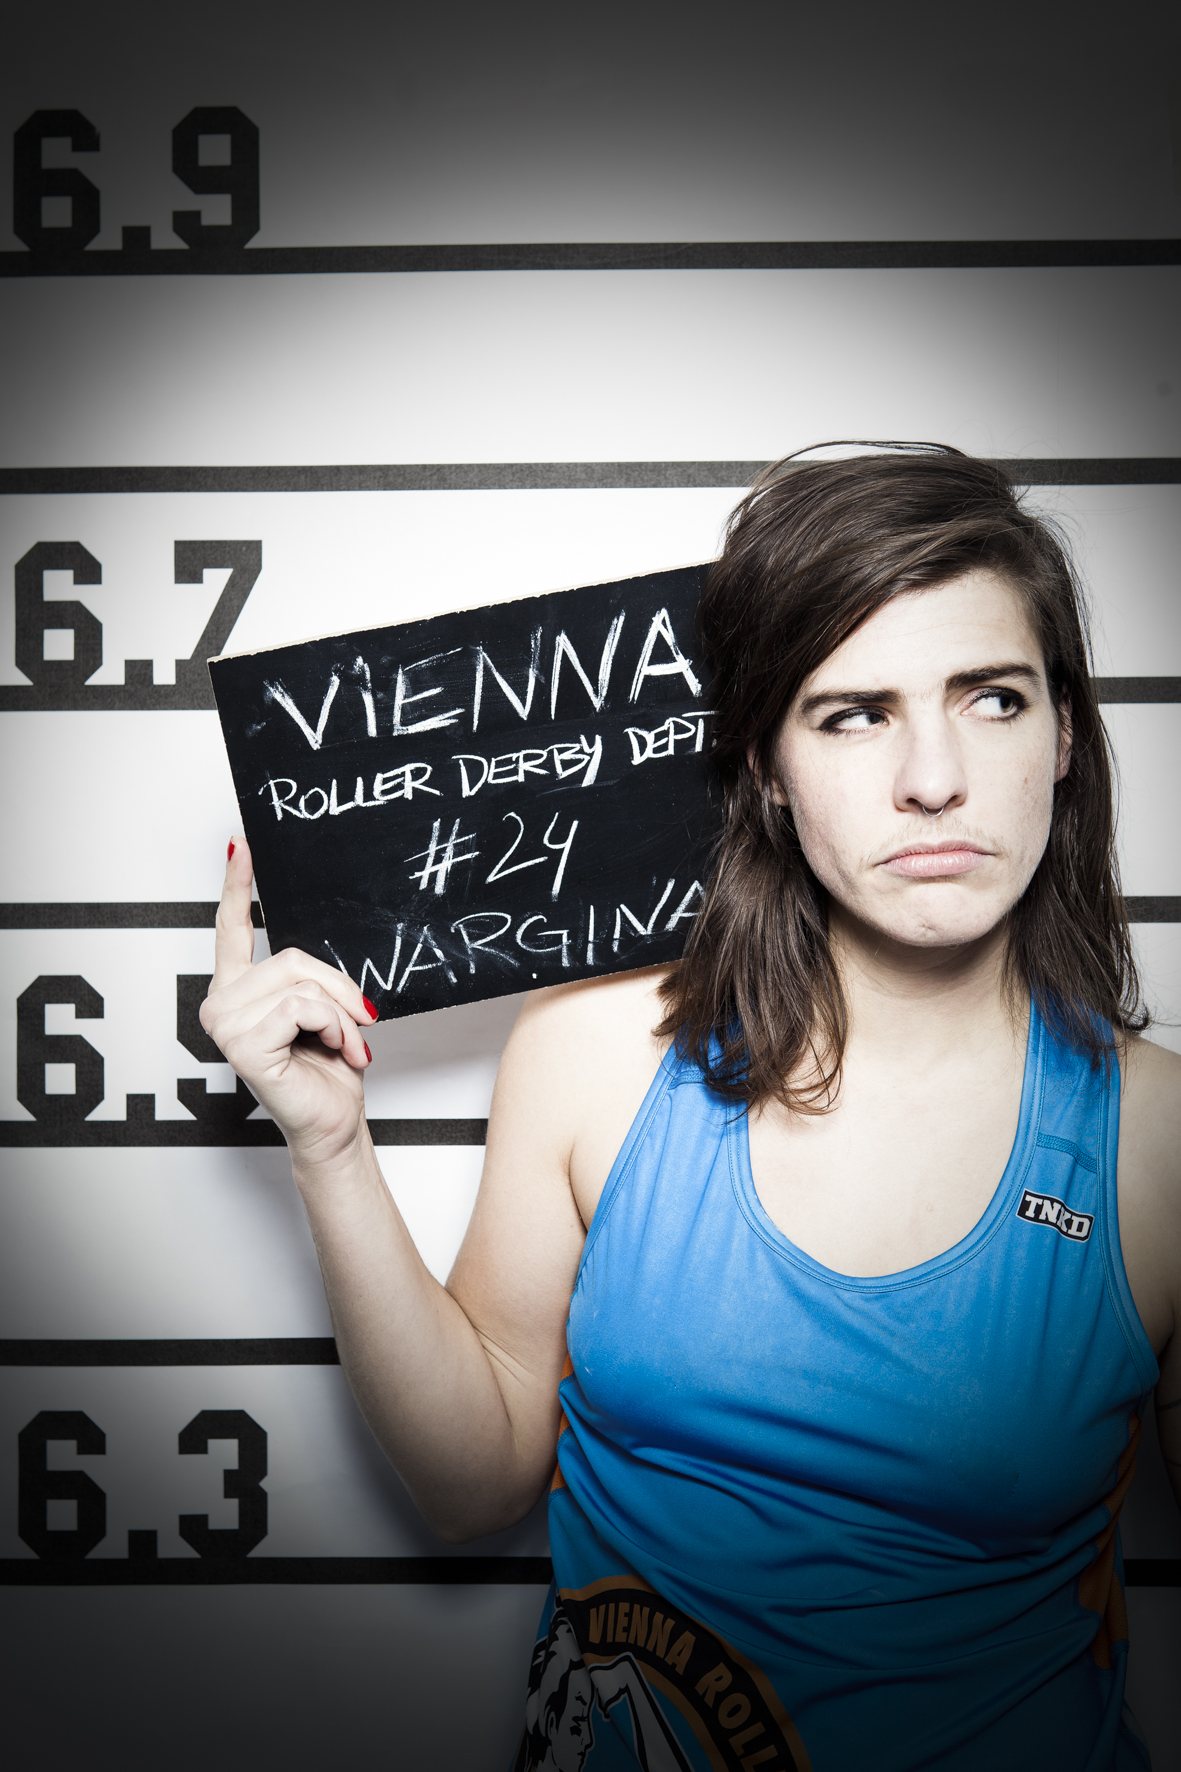 24 WarGina - Vienna Roller Derby